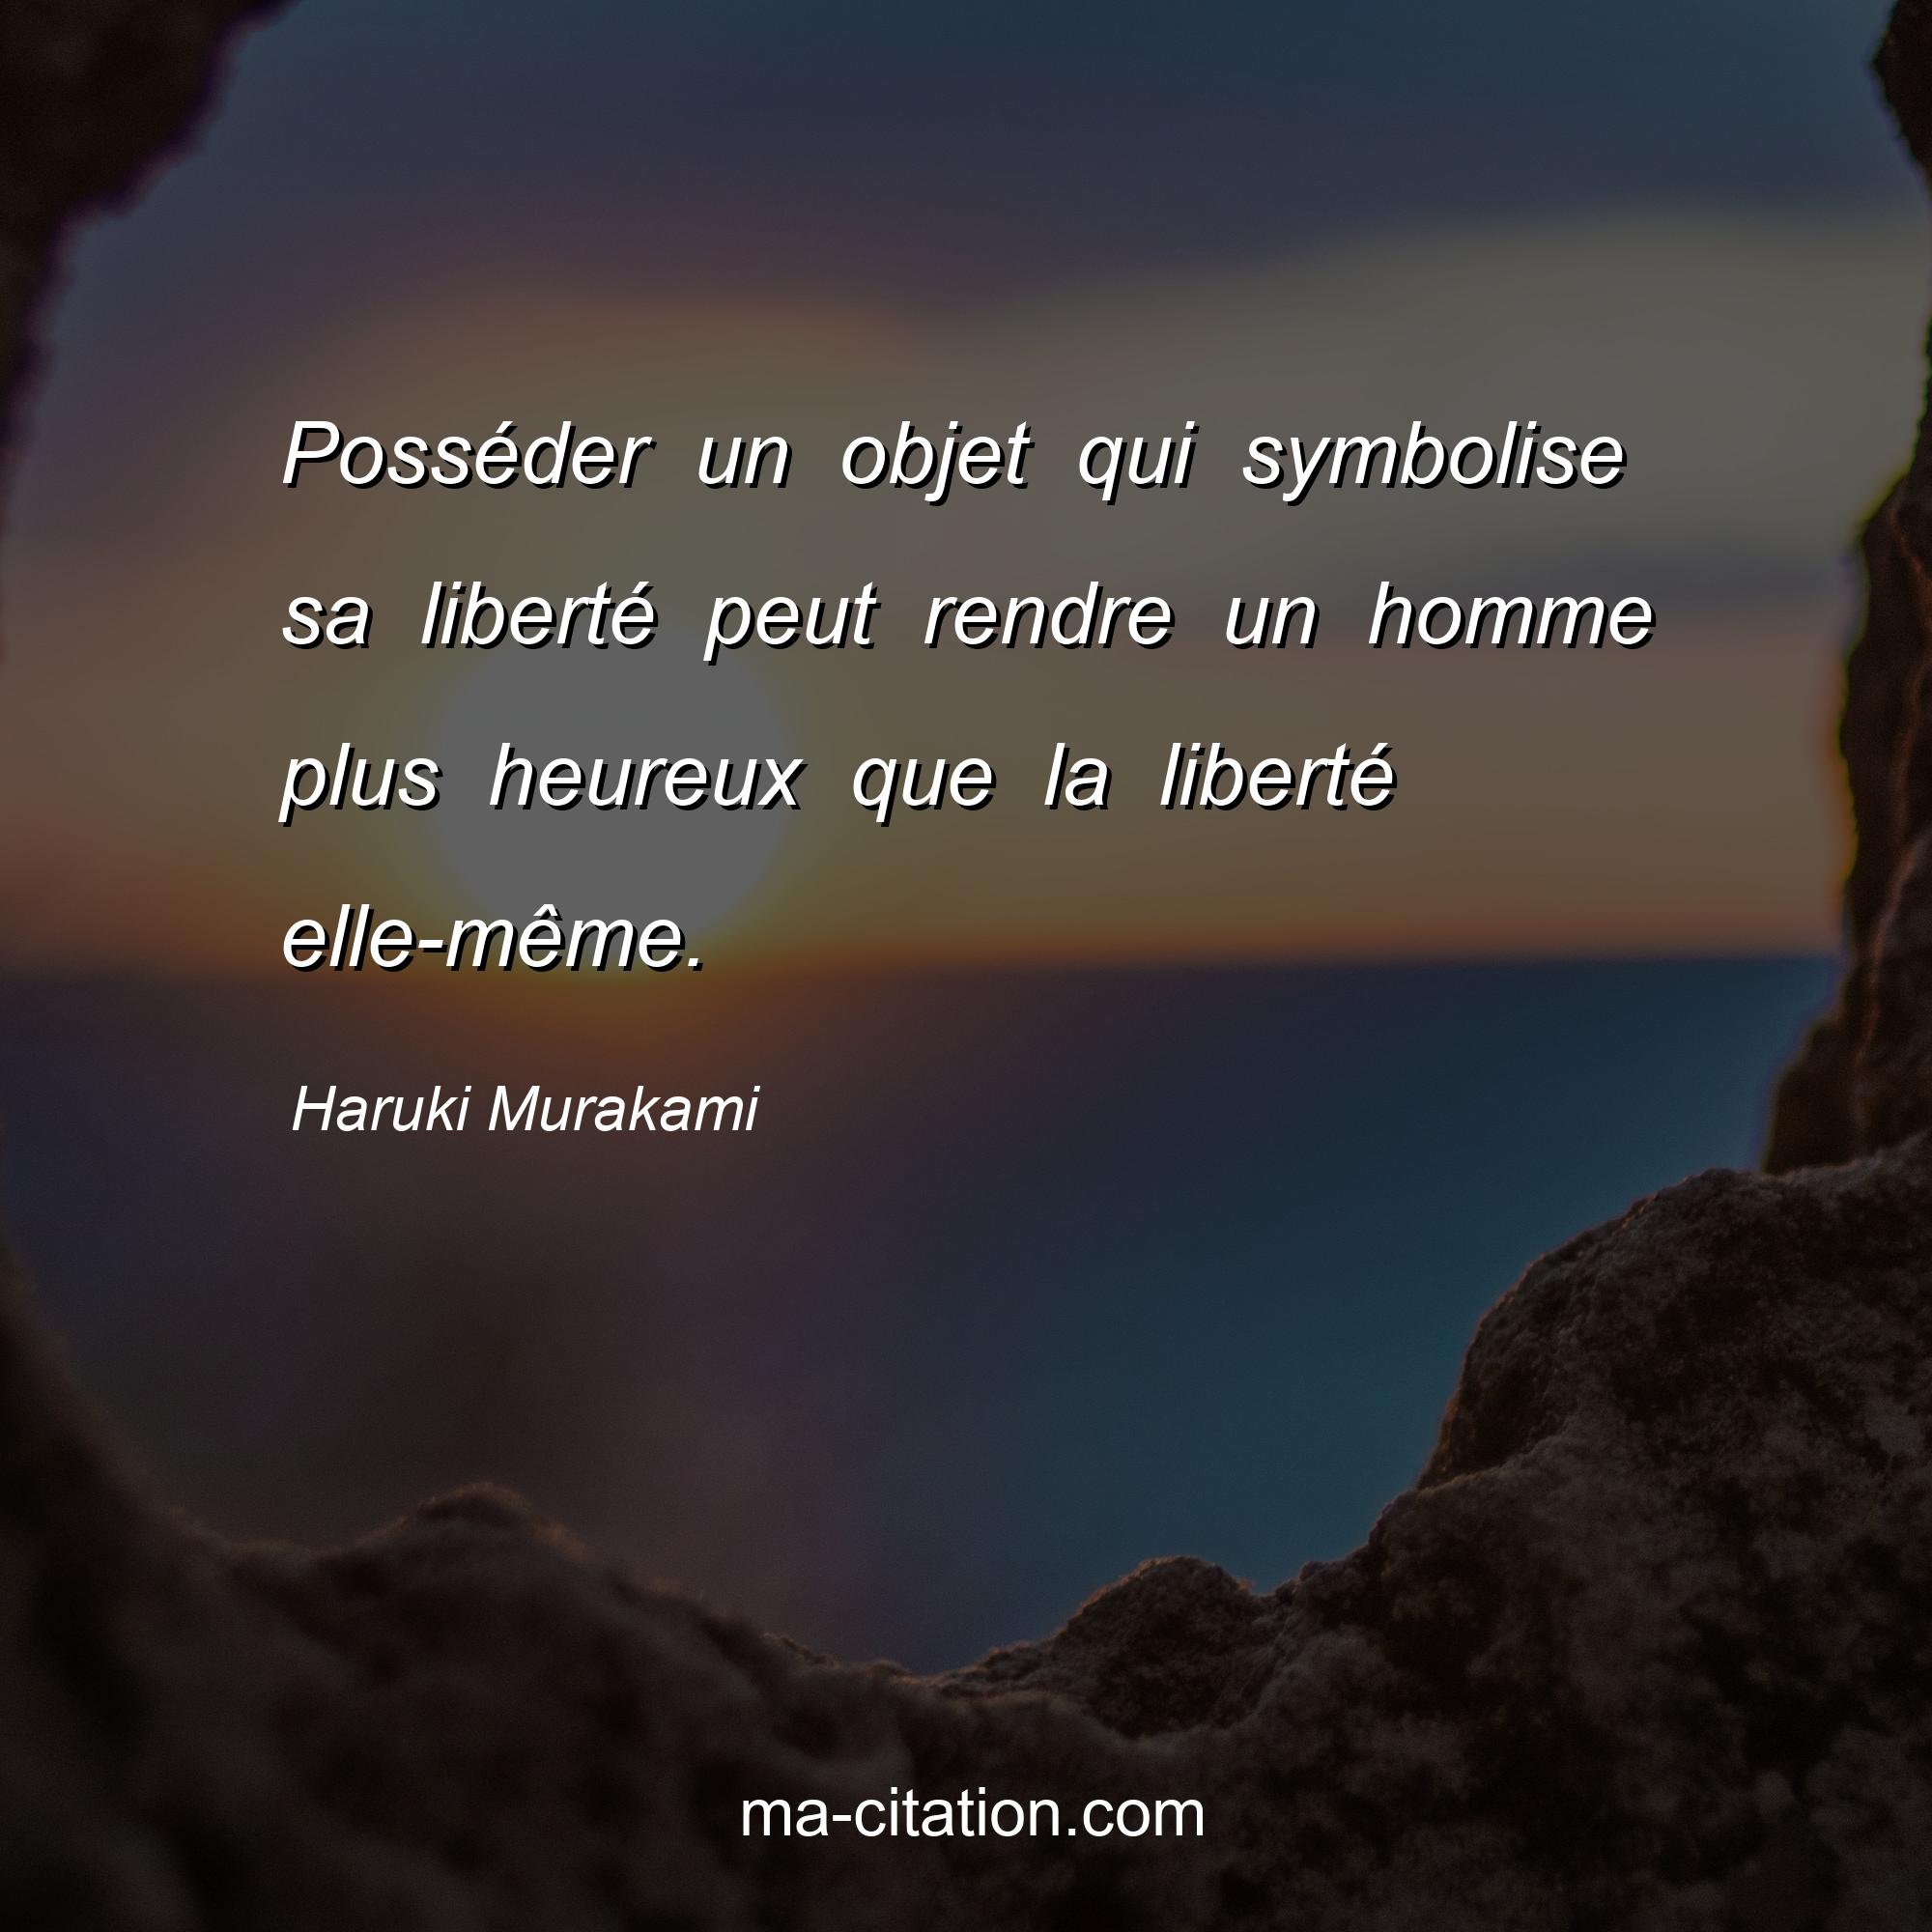 Haruki Murakami : Posséder un objet qui symbolise sa liberté peut rendre un homme plus heureux que la liberté elle-même.